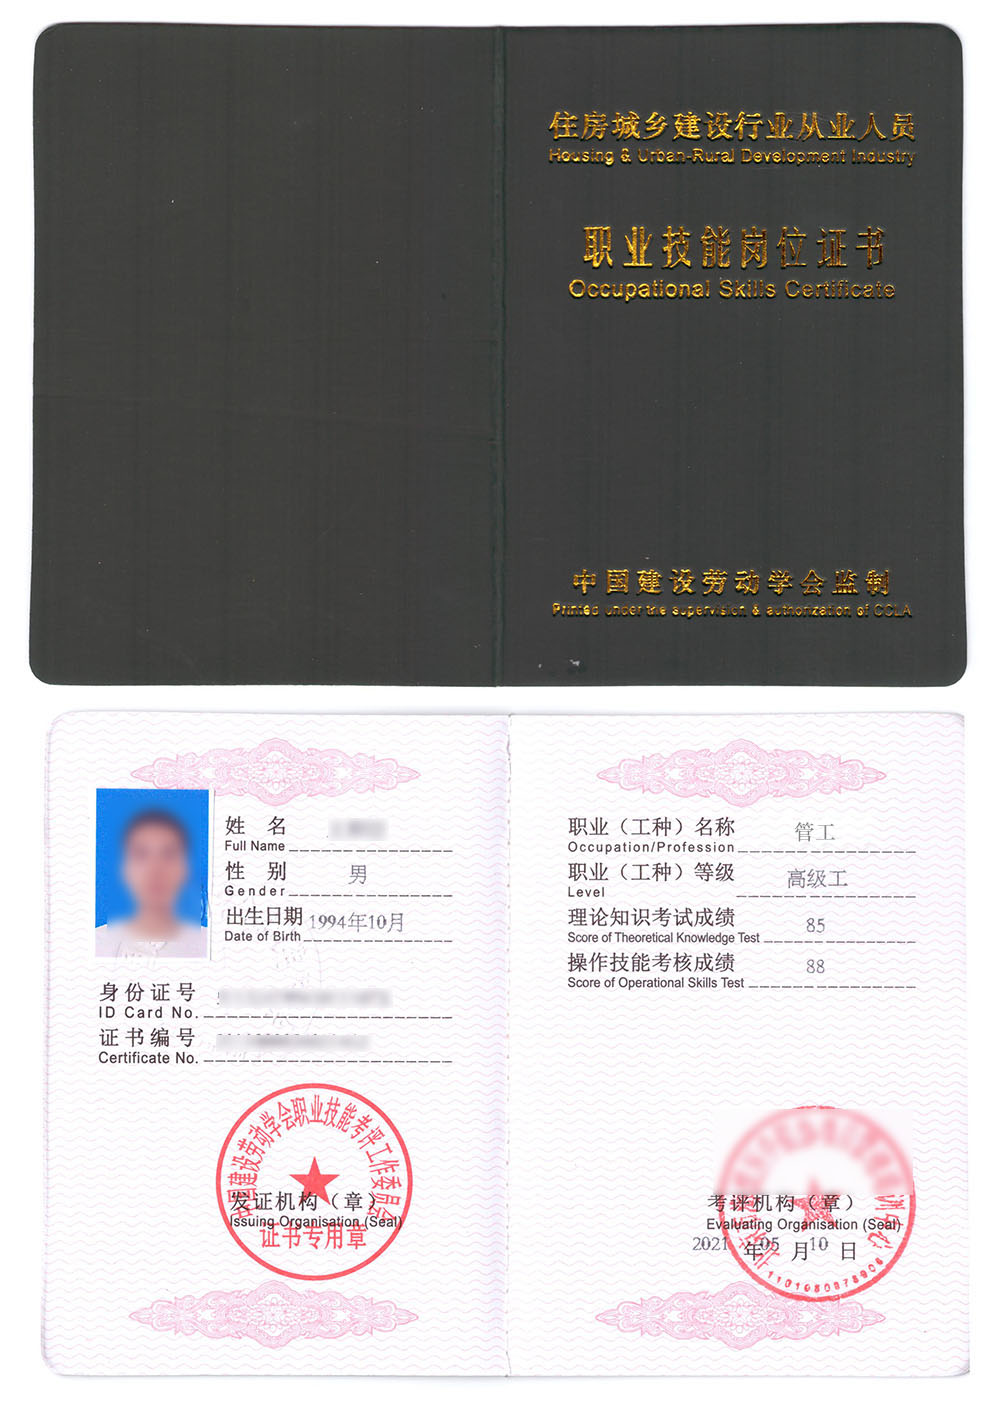 中国建设劳动学会 职业技能岗位证书 管工证书样本